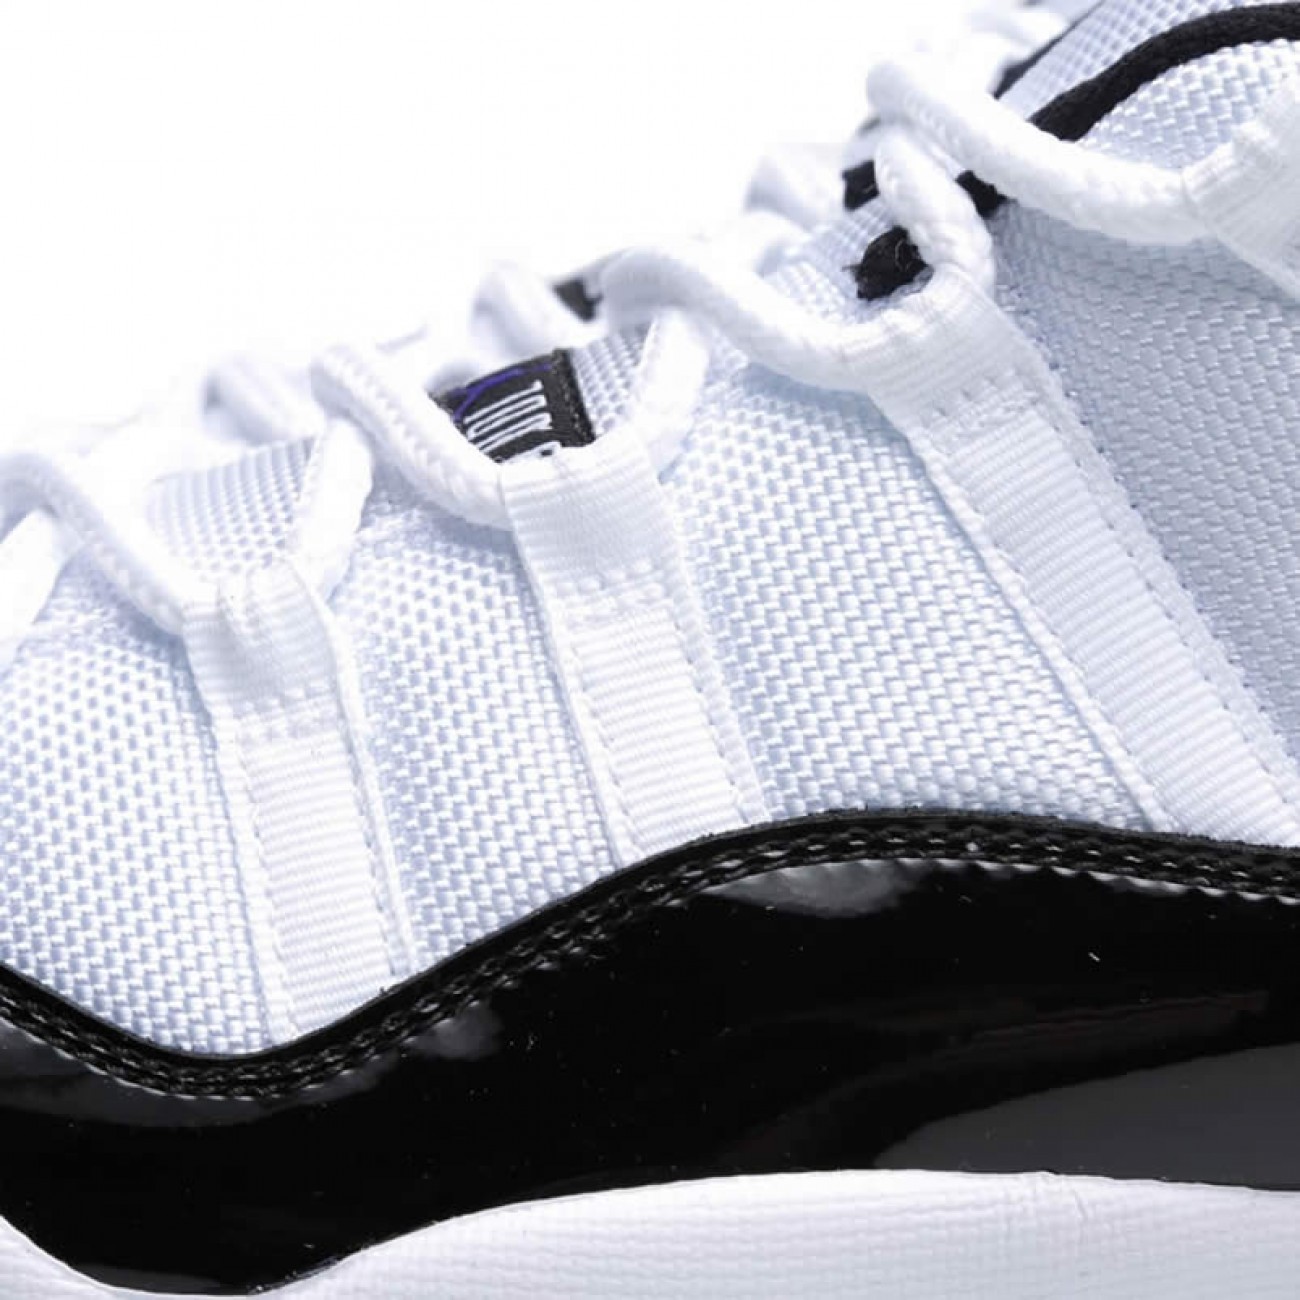 Air Jordan 11 Low Concord Mens & BG (GS) White/Black AJ11 Shoes 528896-153